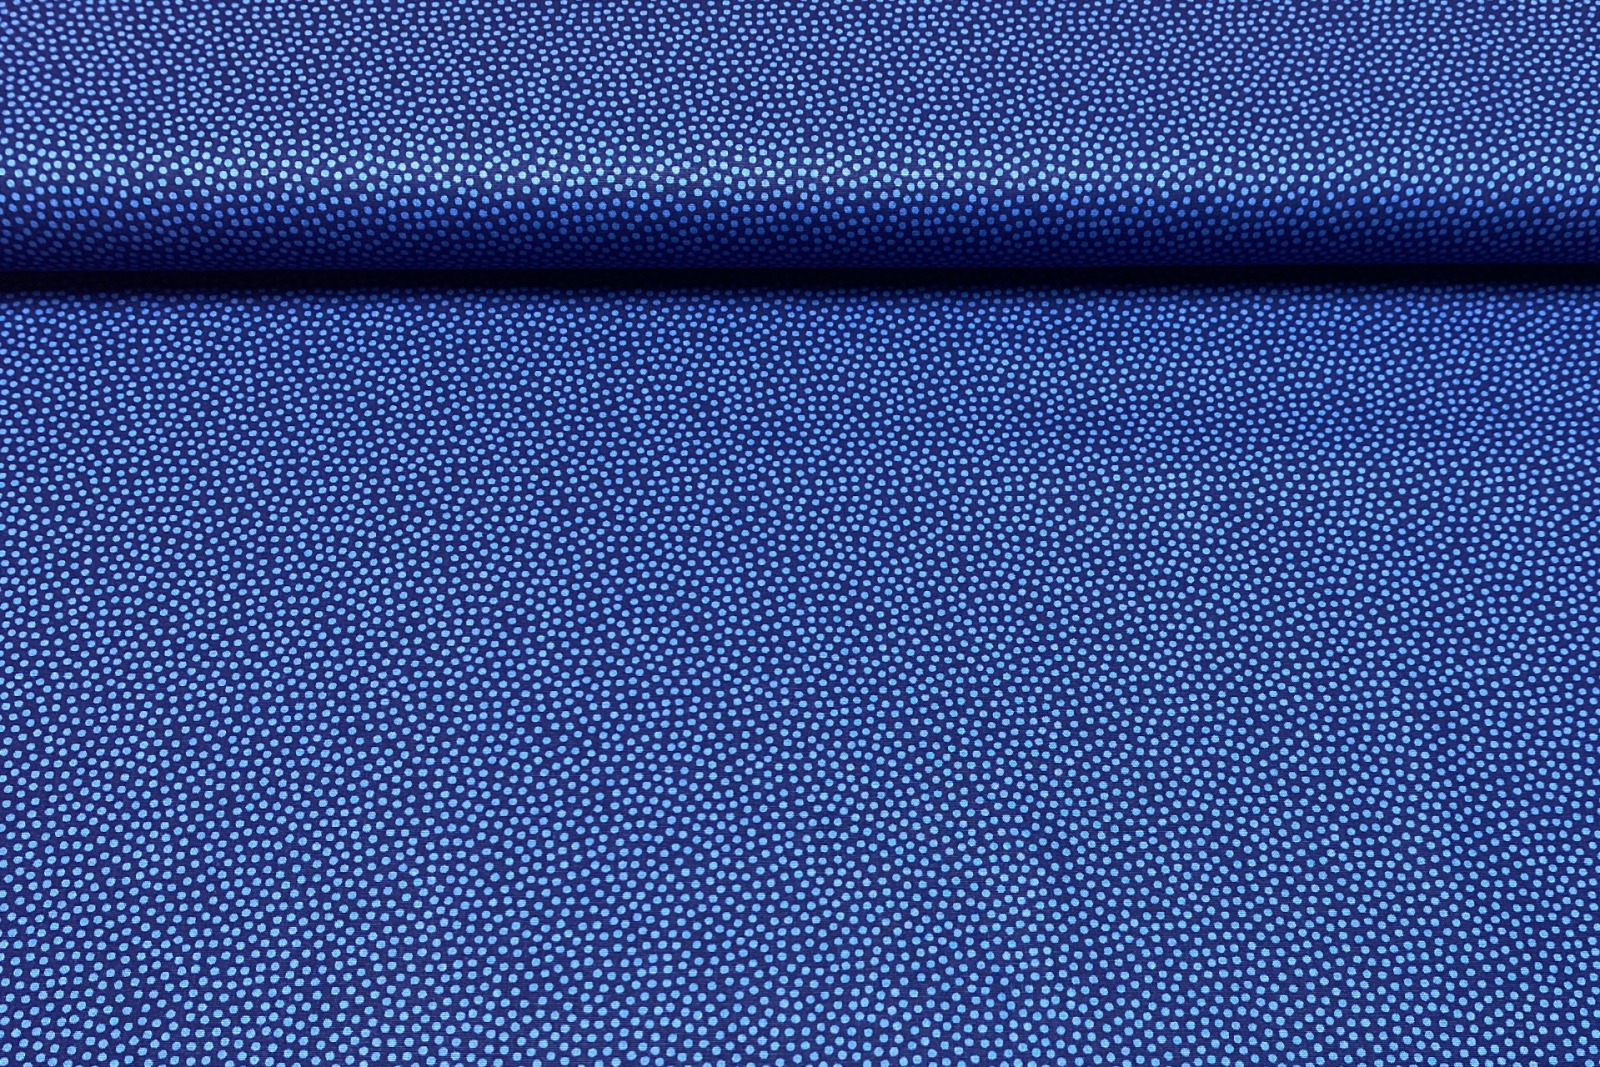 Baumwollwebware - unregelmäßige Punkte - dunkelblau - 100 Baumwolle - Dotty - Swafing 2